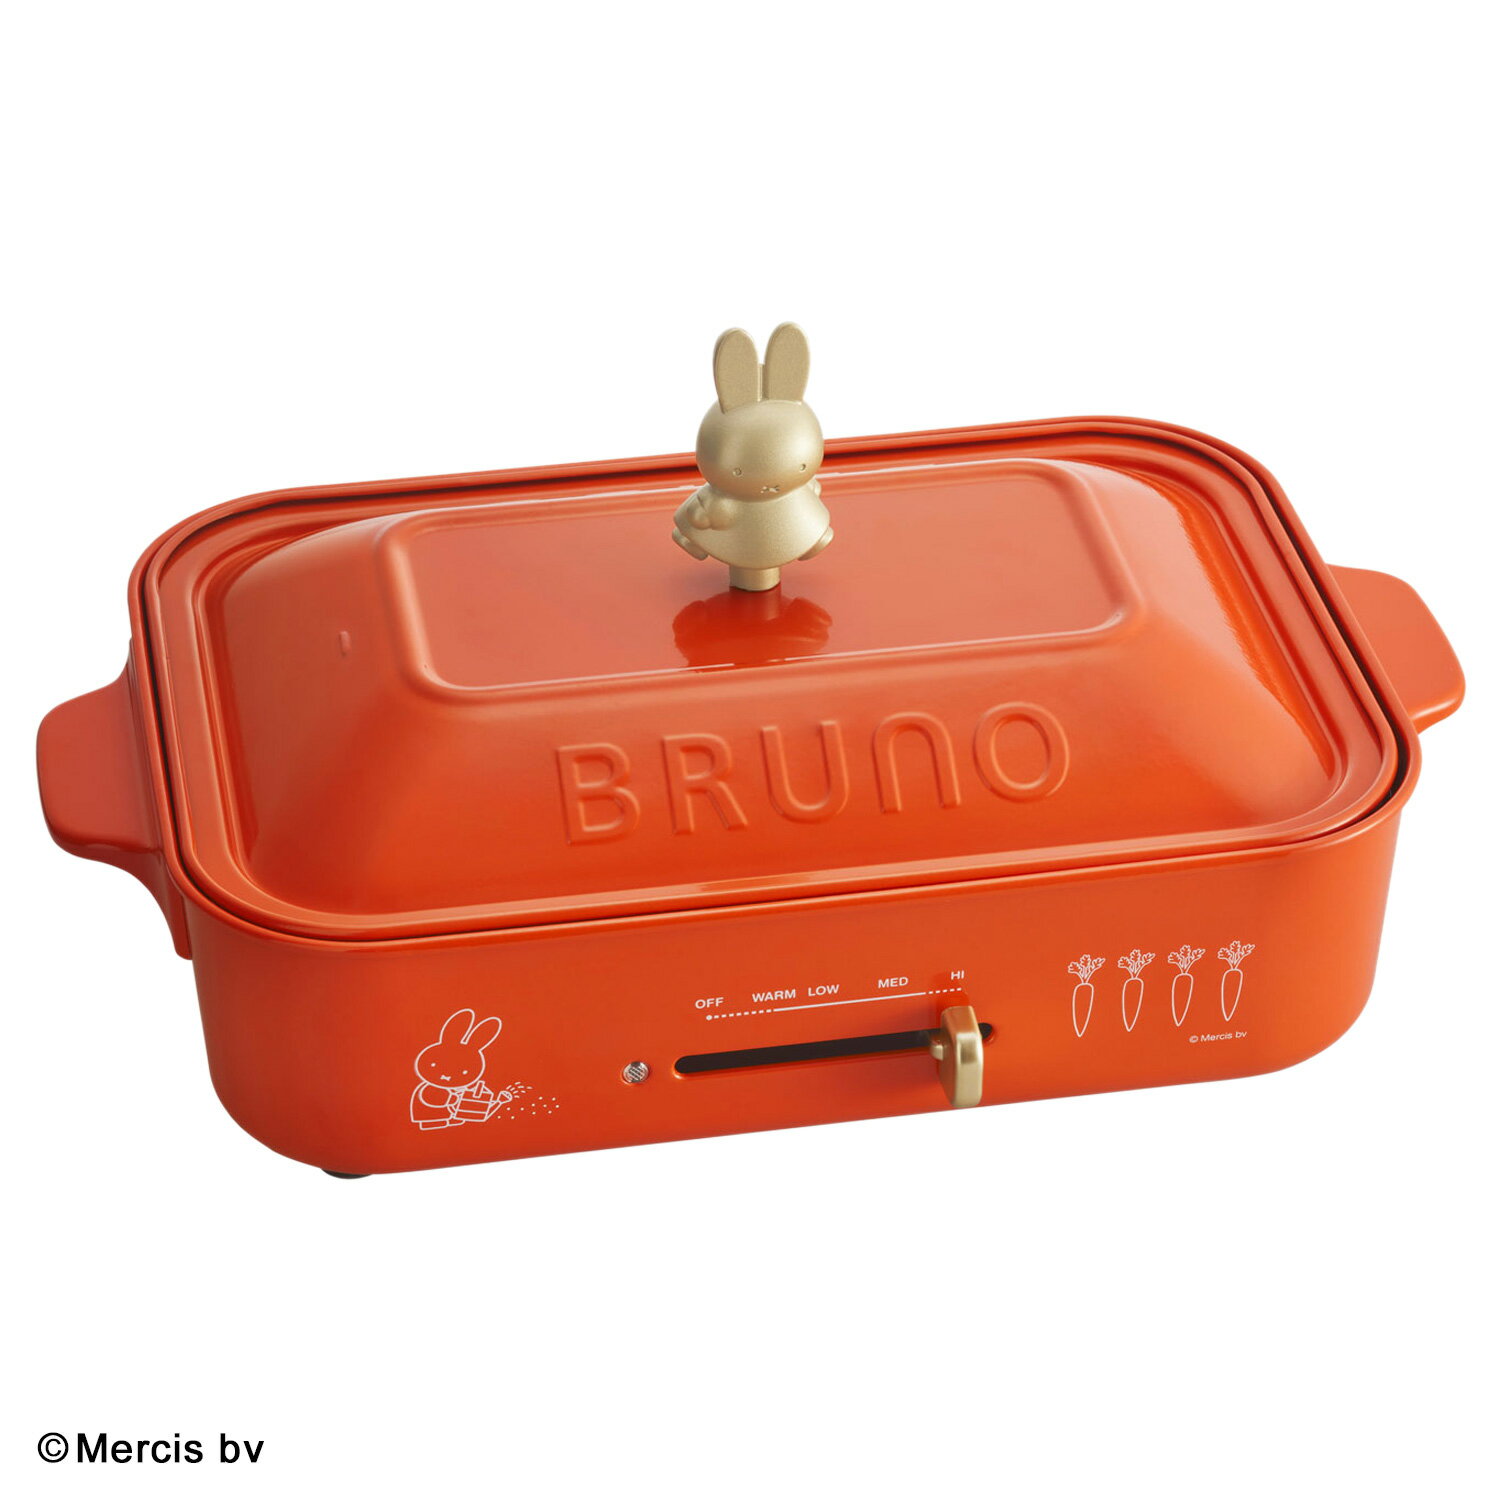 BRUNO BOE087 ブルーノ ホットプレート ミッフィー miffy 一人用 焼肉 たこ焼き器 コンパクト